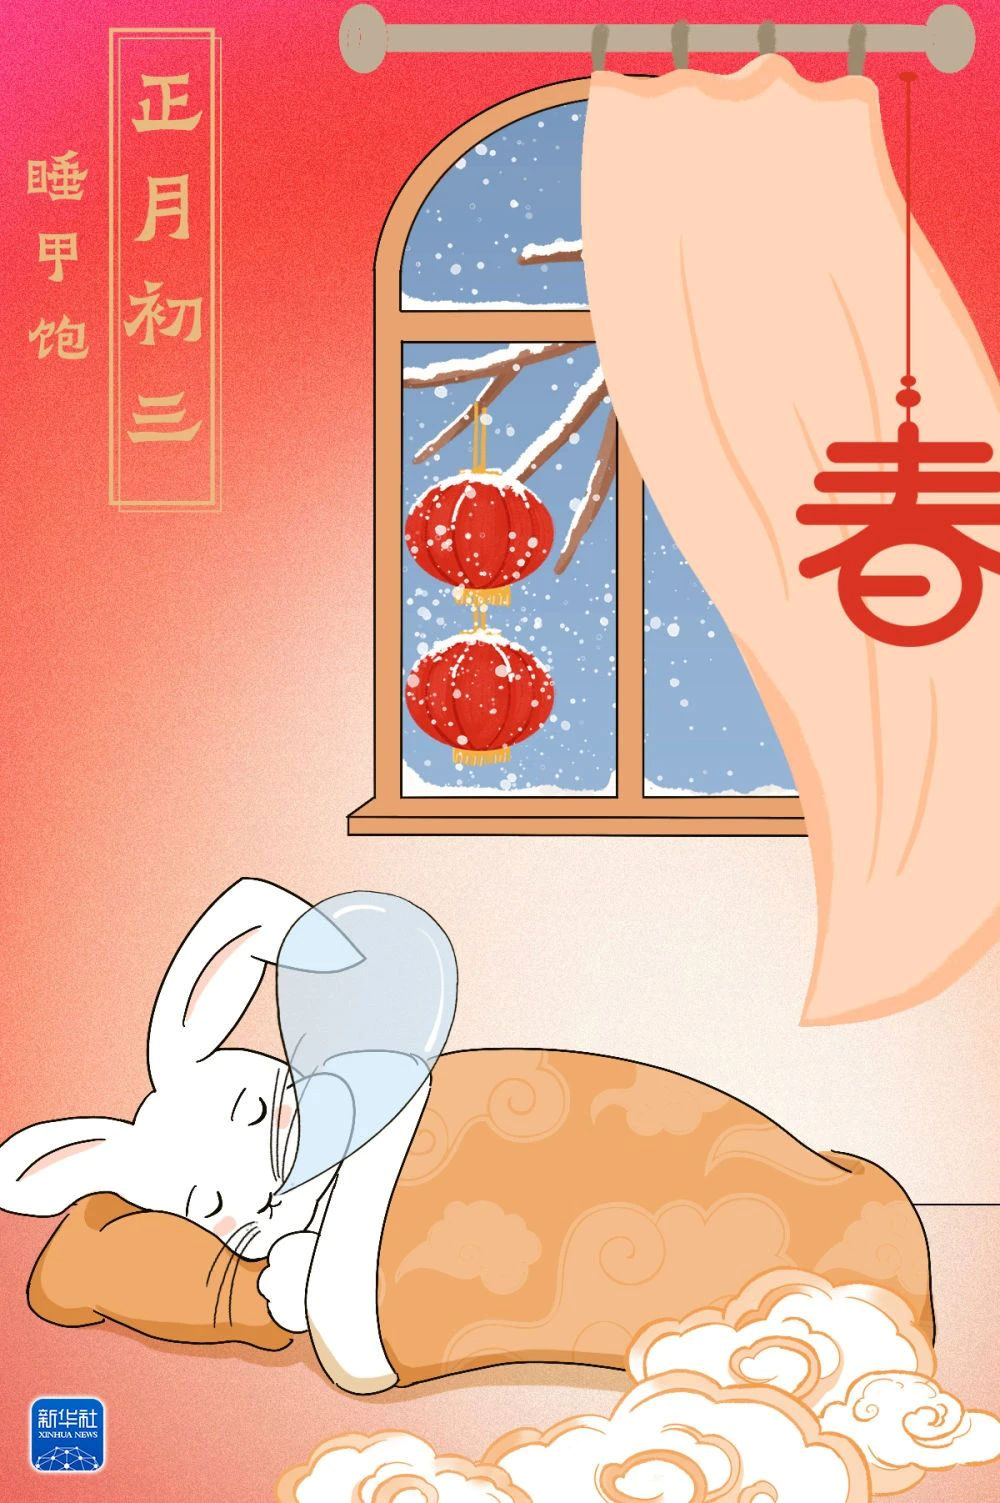 【网络中国节•春节】正月初三，睡甲饱